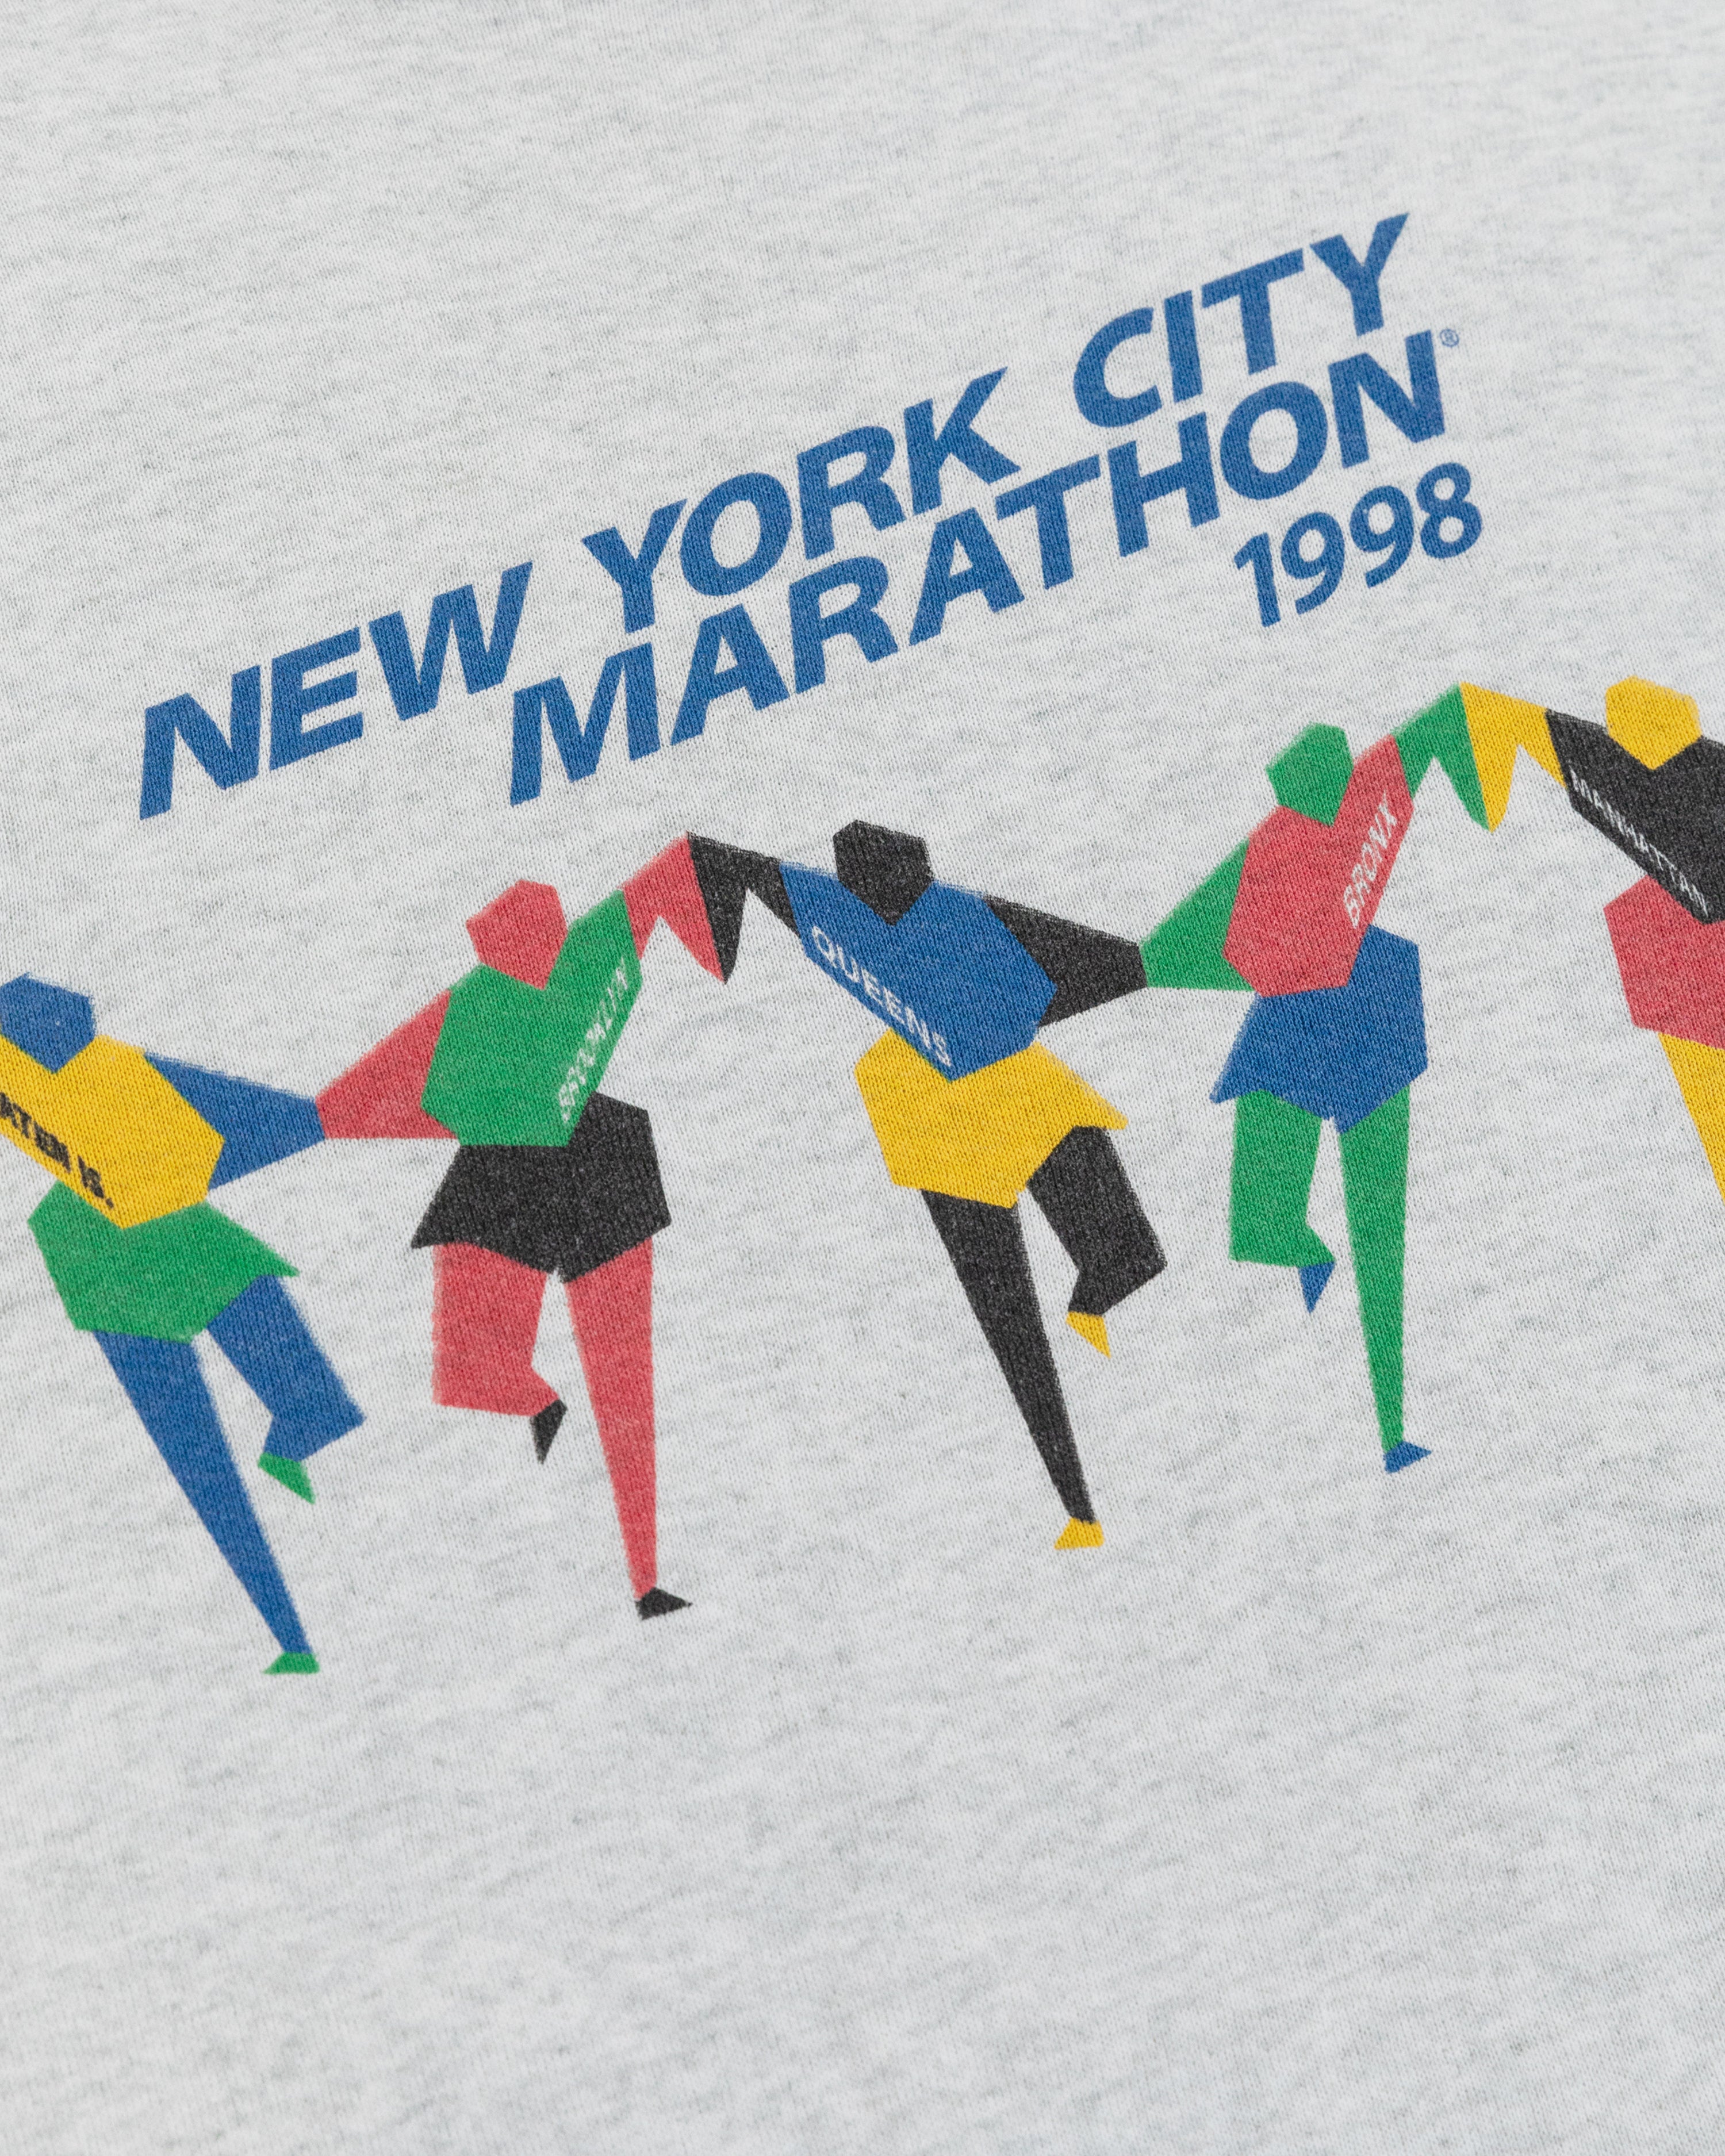 Vintage 1998 NYC Marathon Sweatshirt